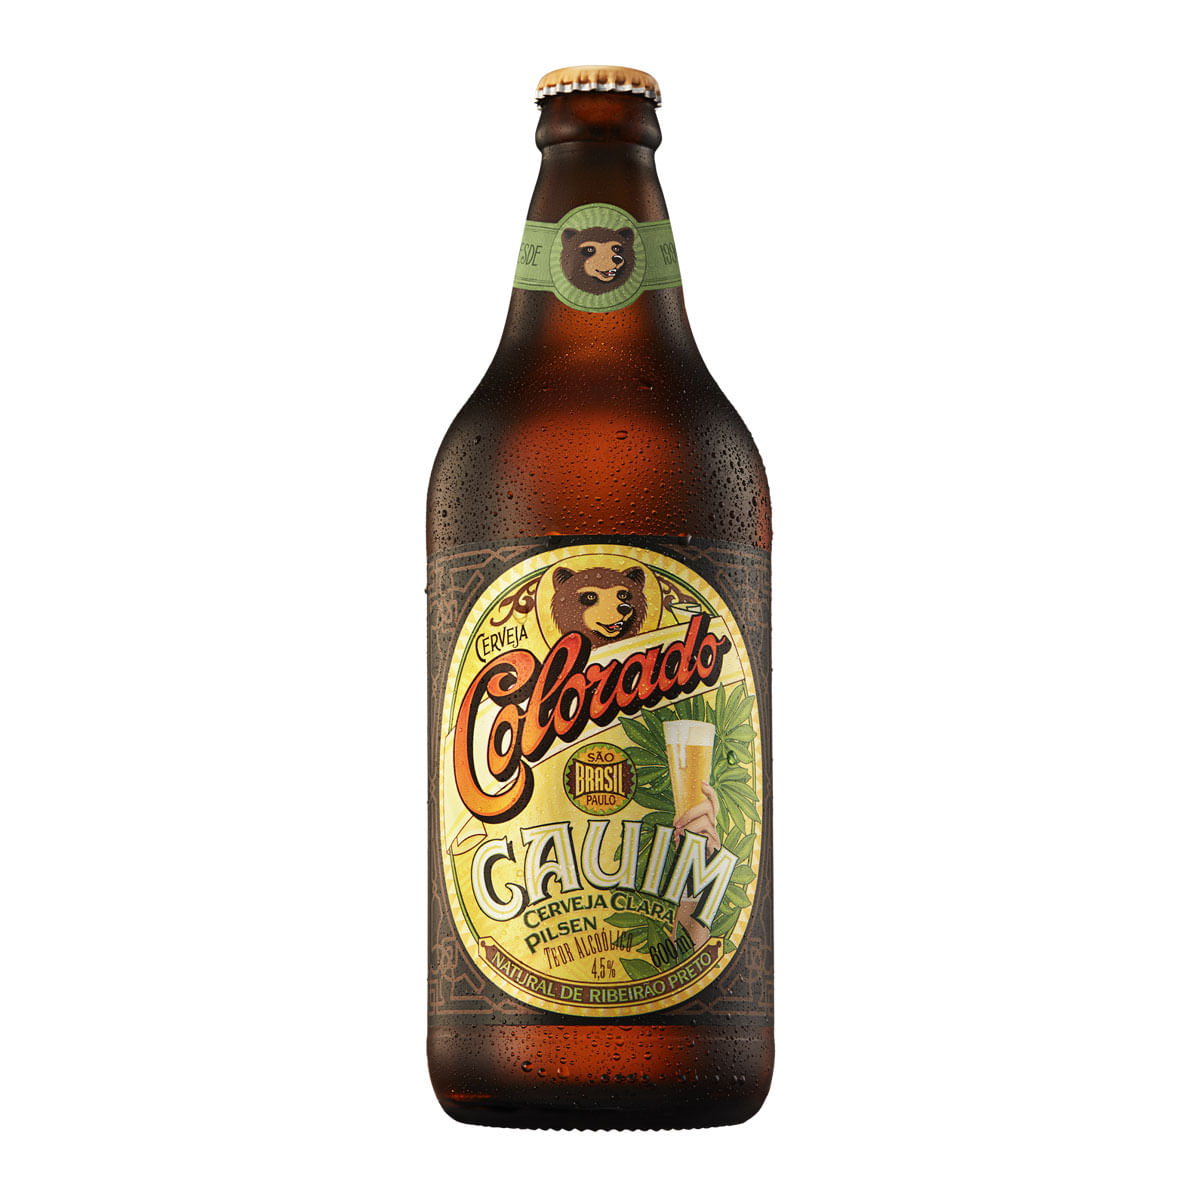 Cerveja Colorado Cauim 600ml Garrafa